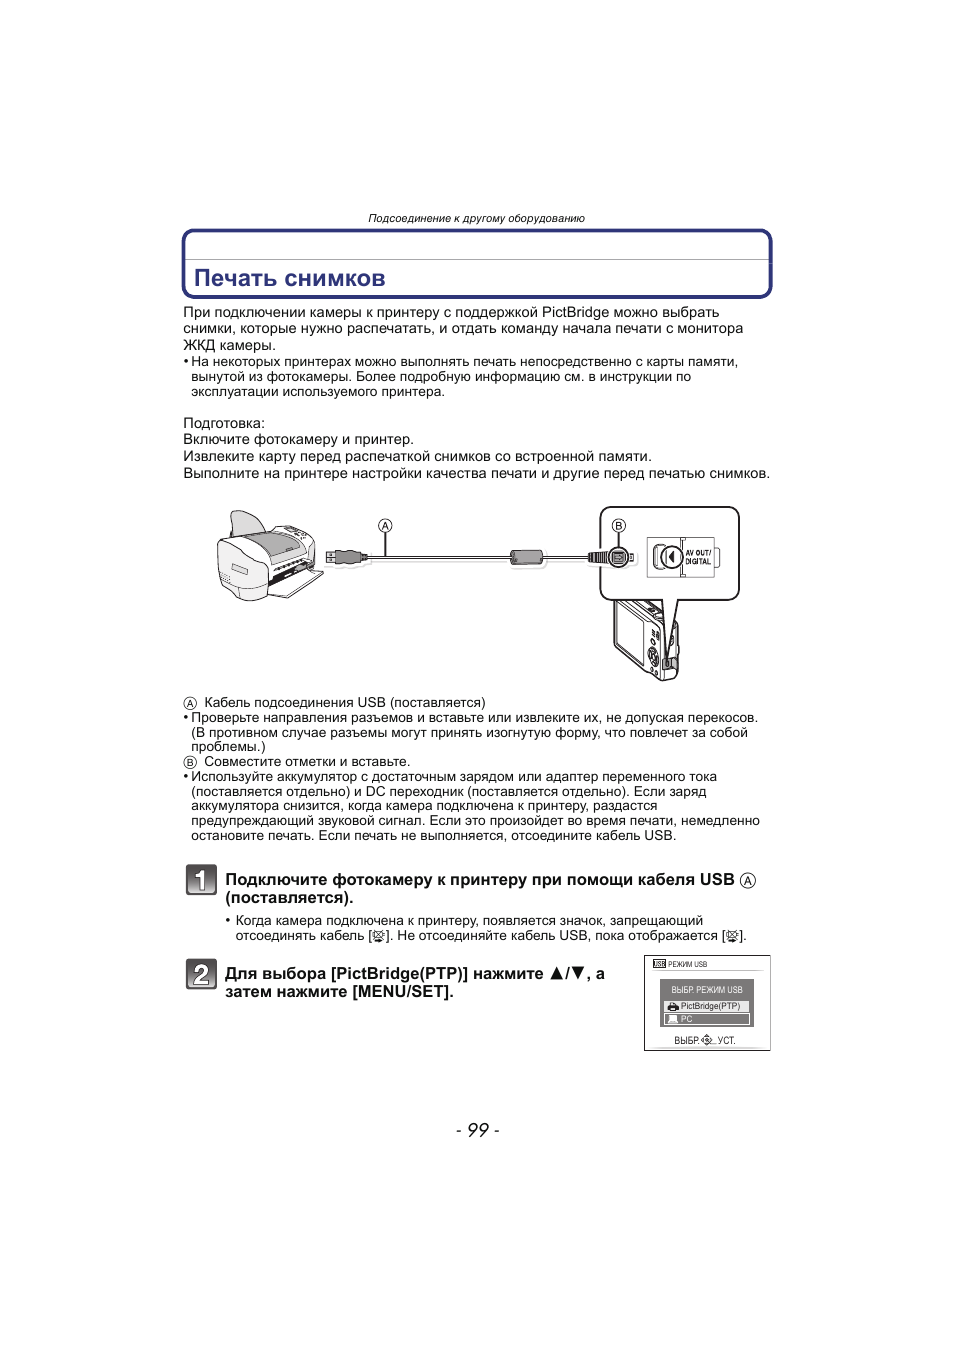 Печать снимков | Инструкция по эксплуатации Panasonic KX-MC6020 | Страница 99 / 130